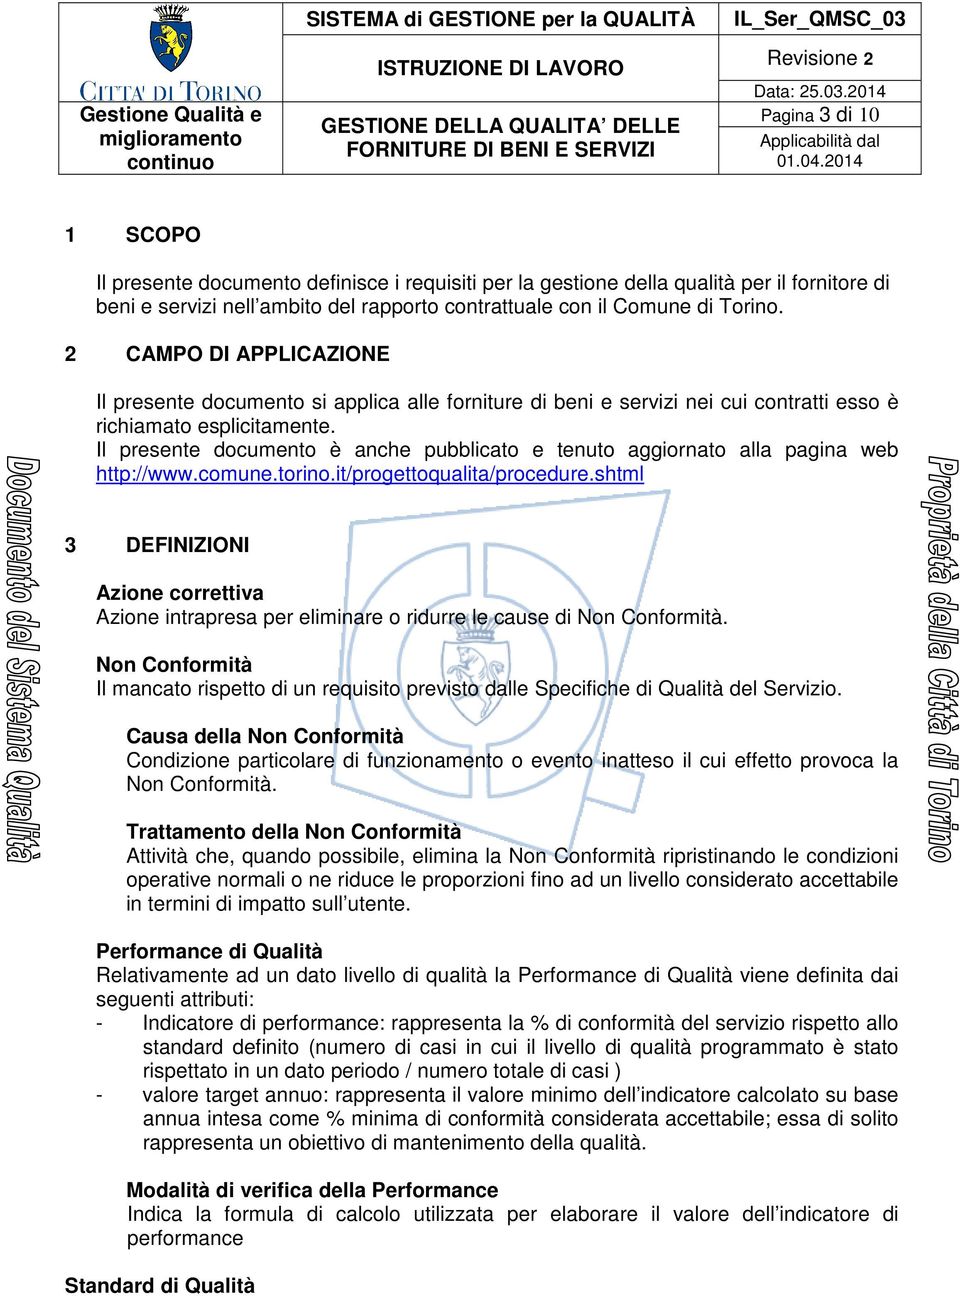 Il presente documento è anche pubblicato e tenuto aggiornato alla pagina web http://www.comune.torino.it/progettoqualita/procedure.